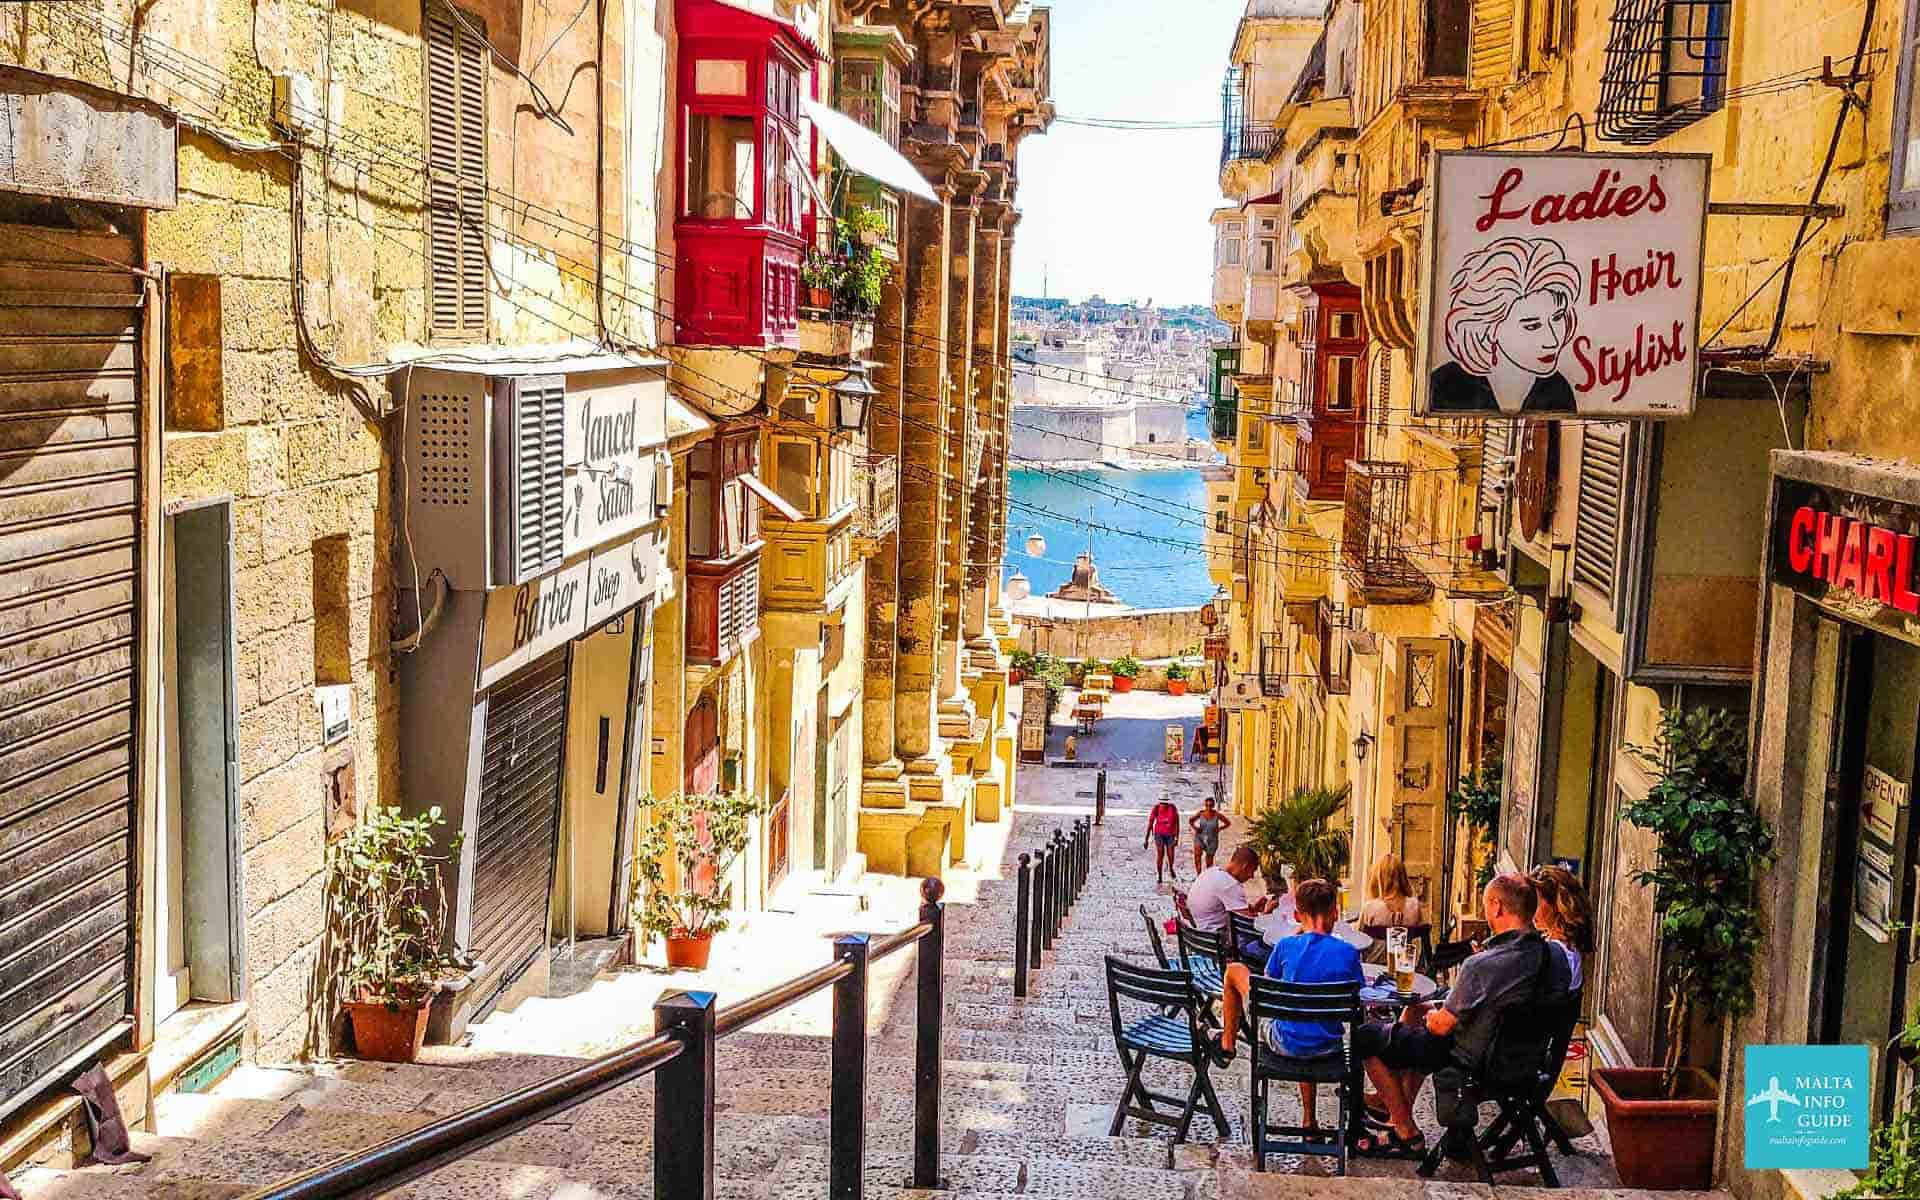 Lovely narrow street in Valletta Malta.